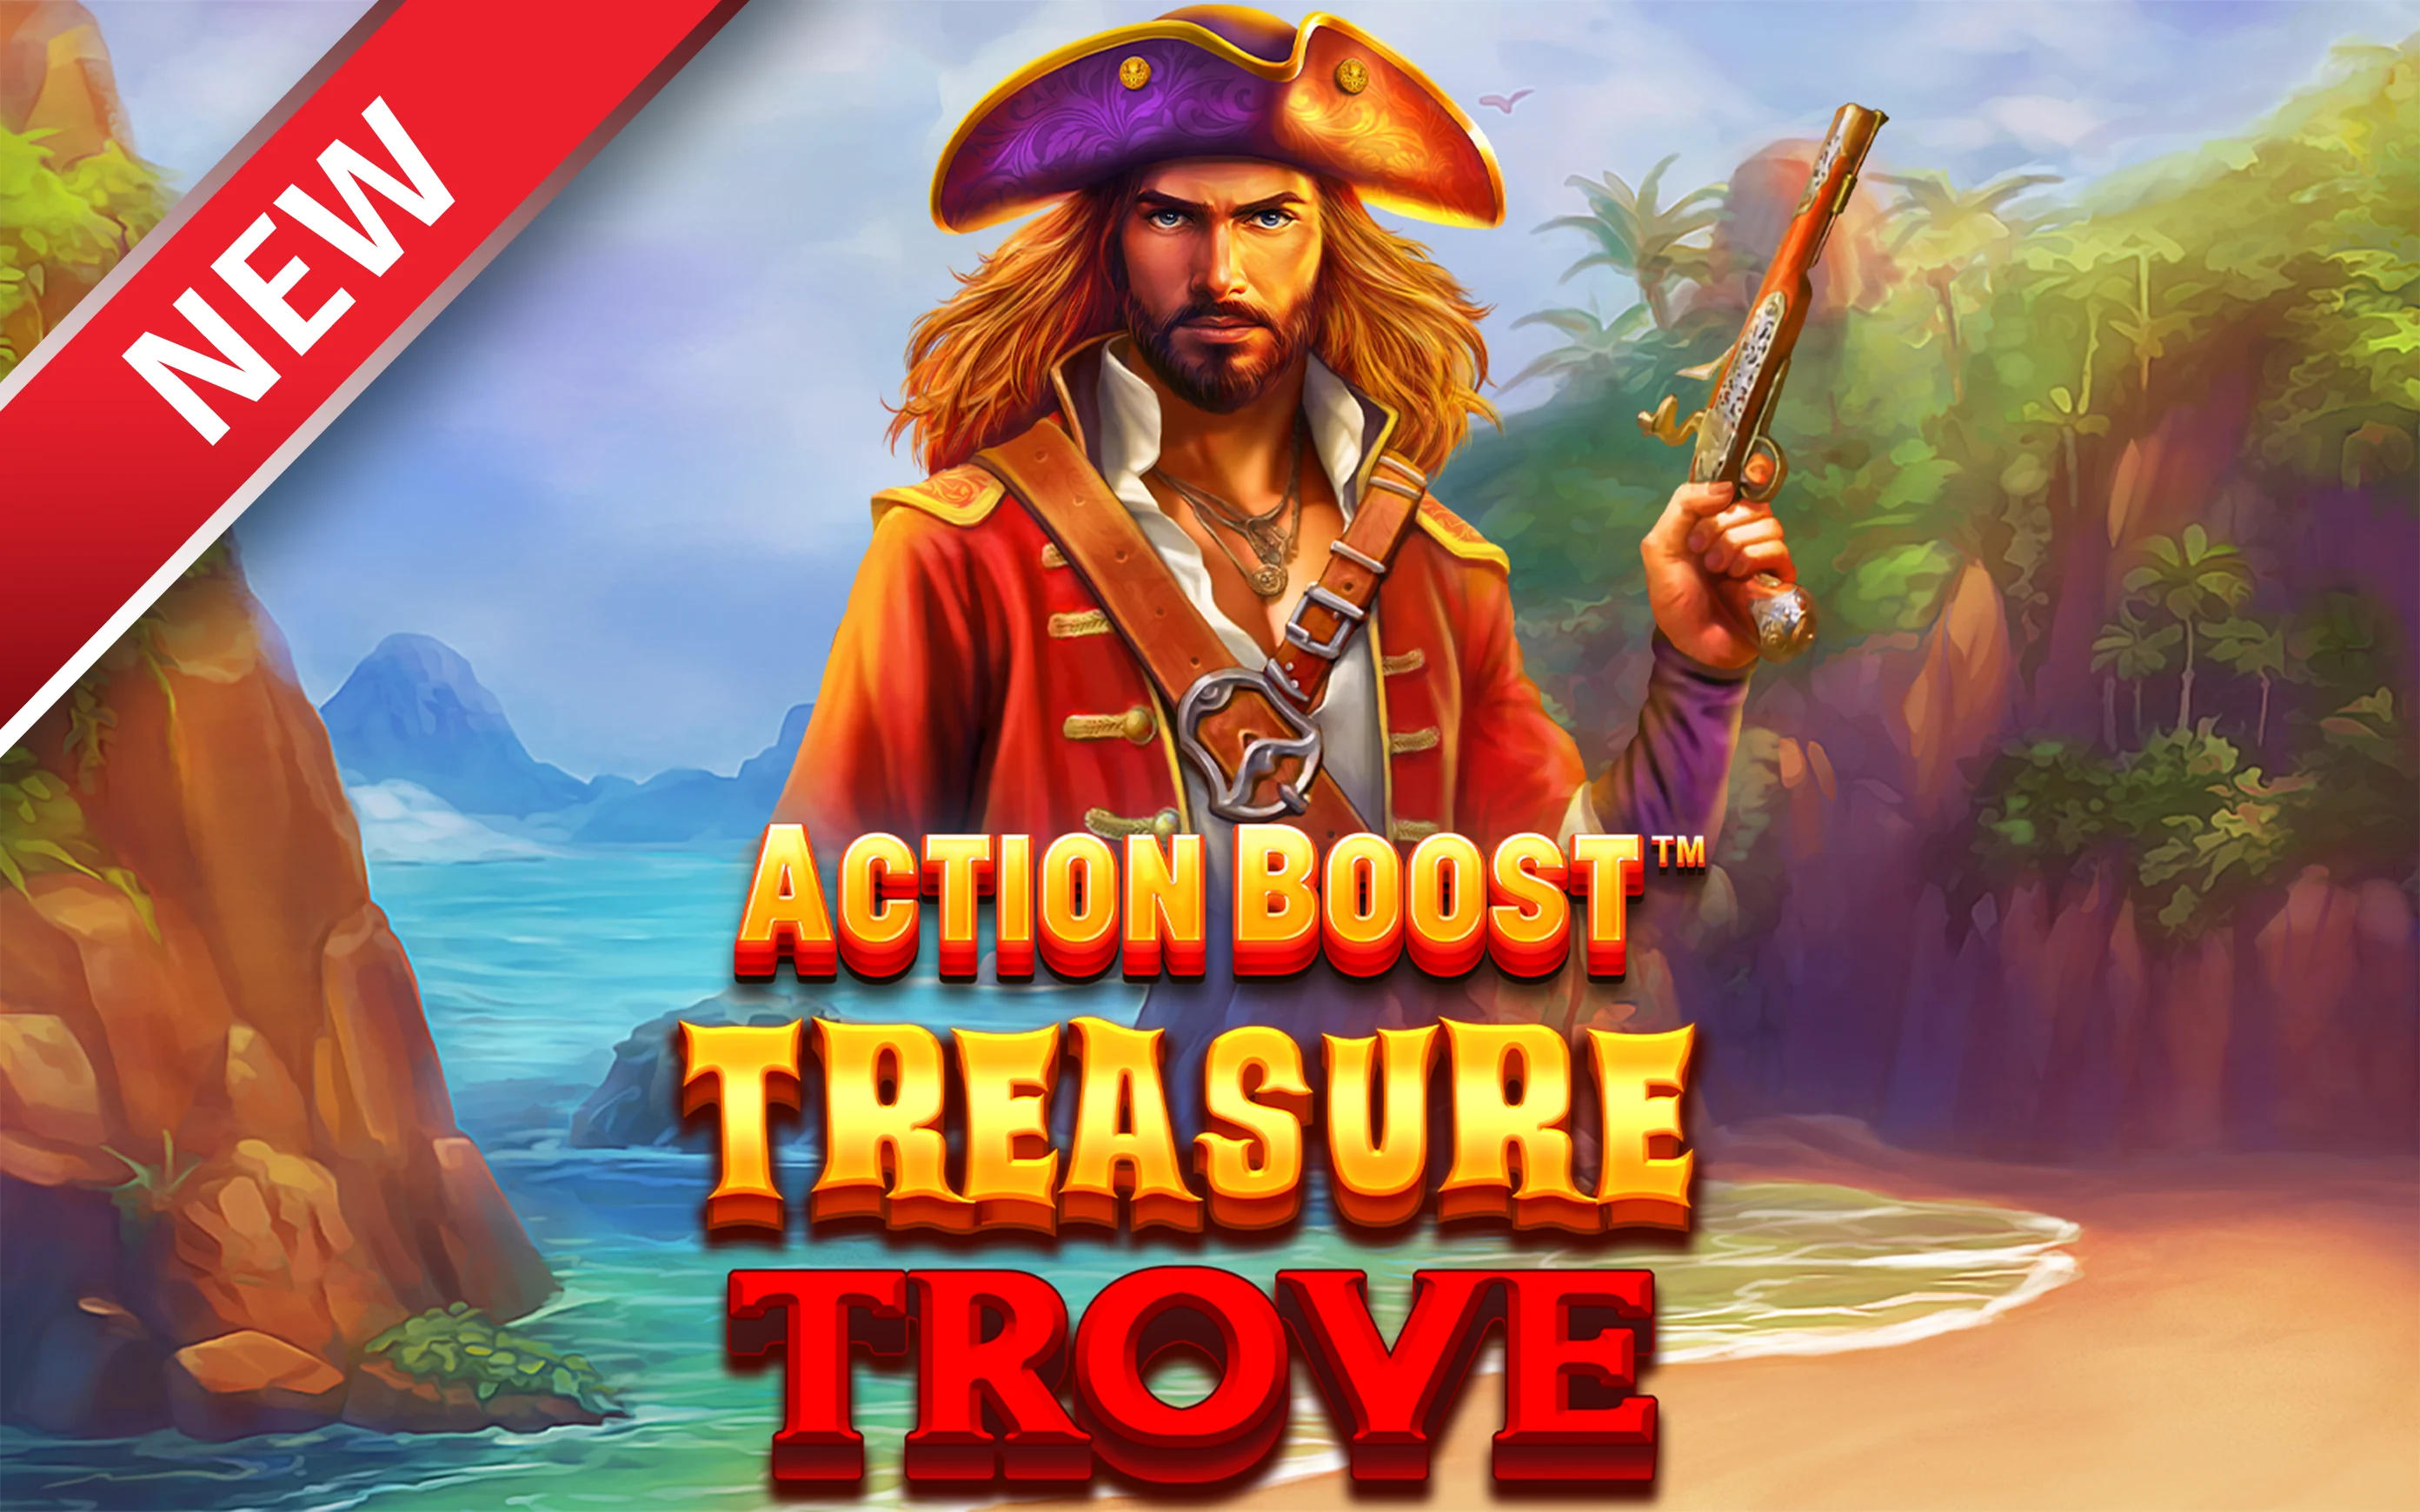 Speel Action Boost™ Treasure Trove™ op Starcasino.be online casino